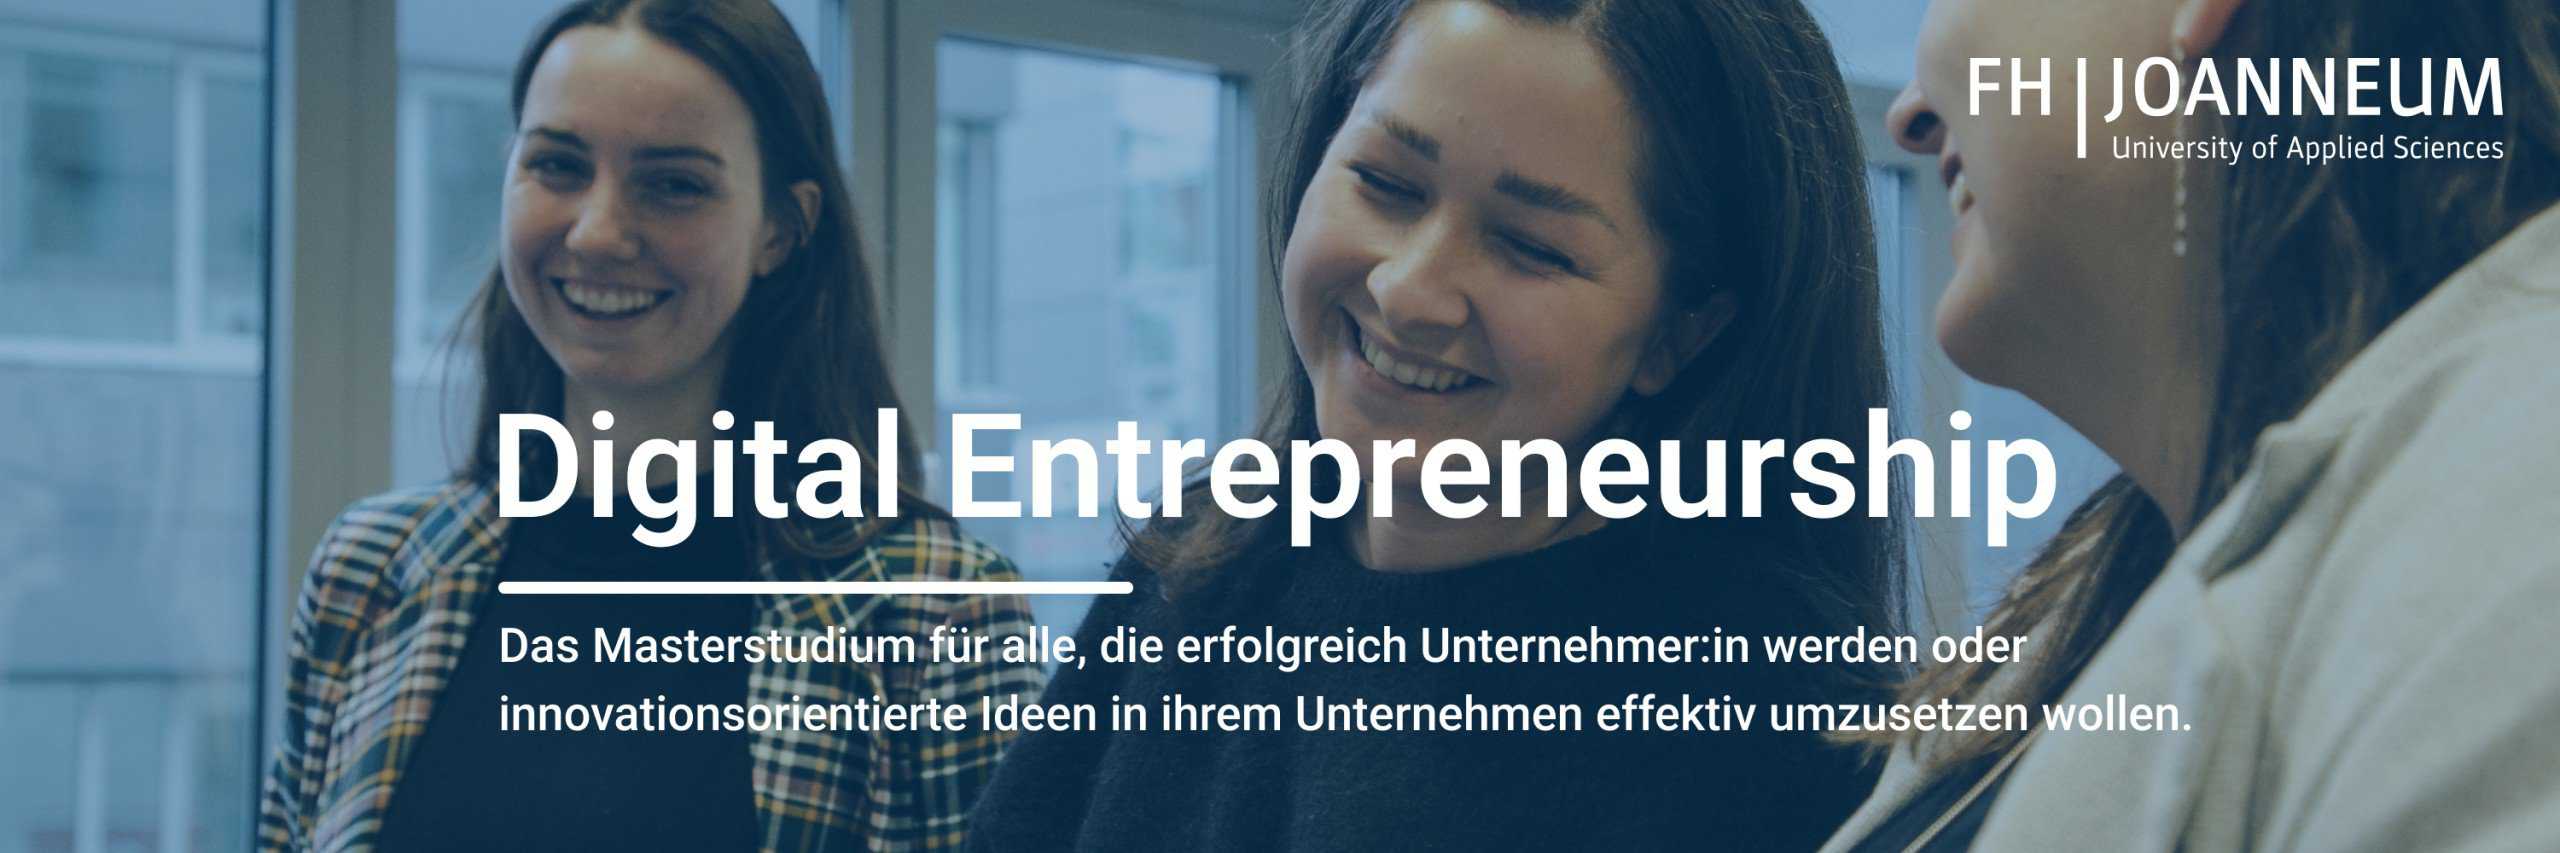 Digital Entrepreneurship im Fokus: Moritz Lumetsberger und sein Weg vom Masterstudenten zum Unternehmer 1